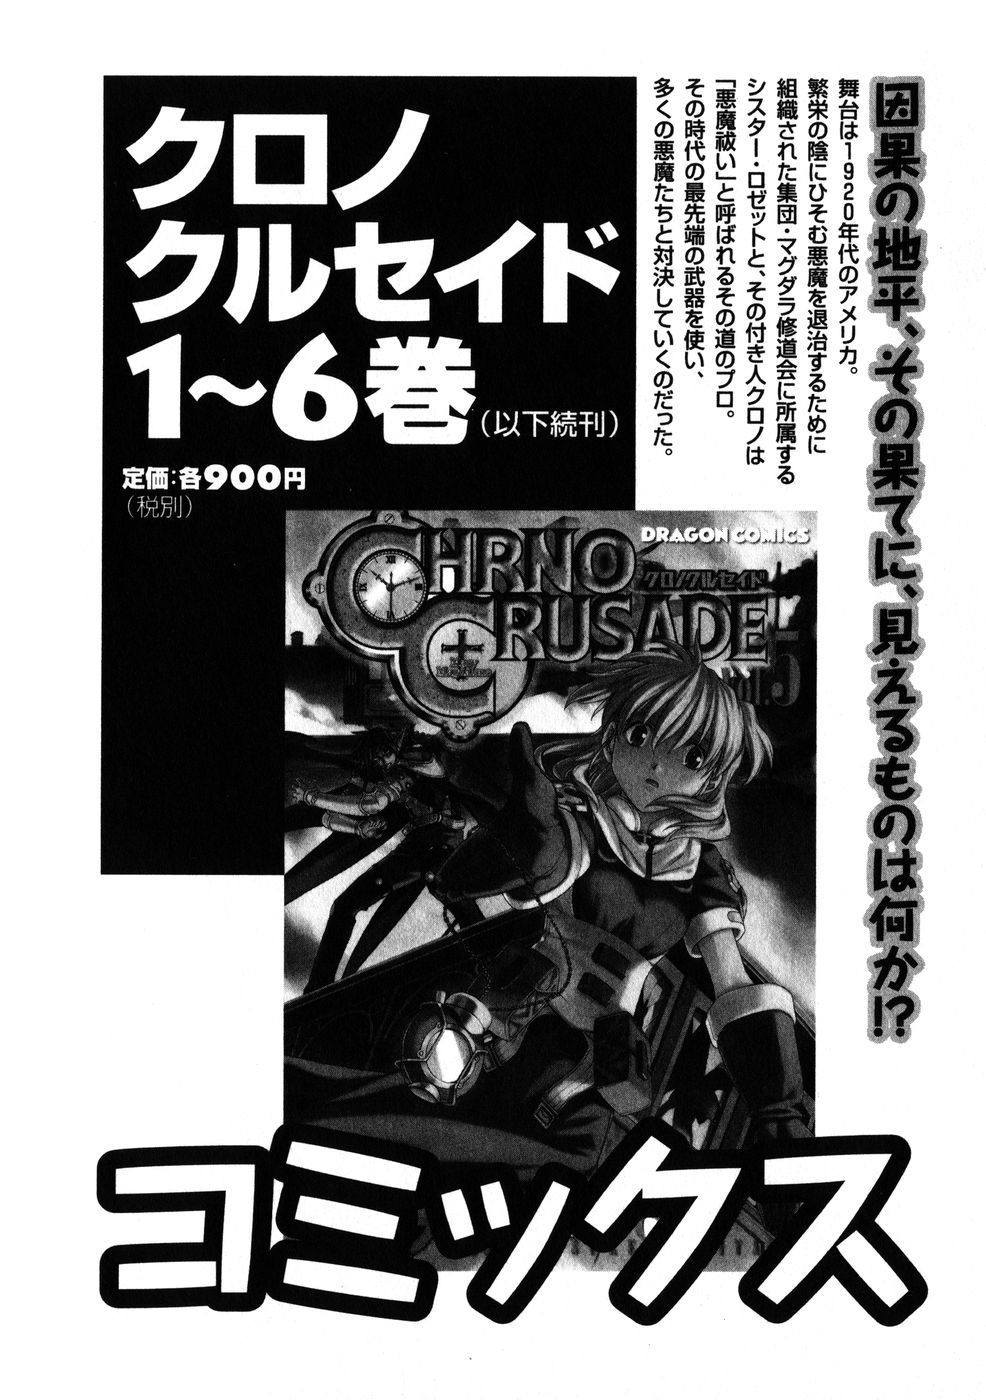 [Manga] Chrono Crusade CHRNO-CRUSADE-01-180